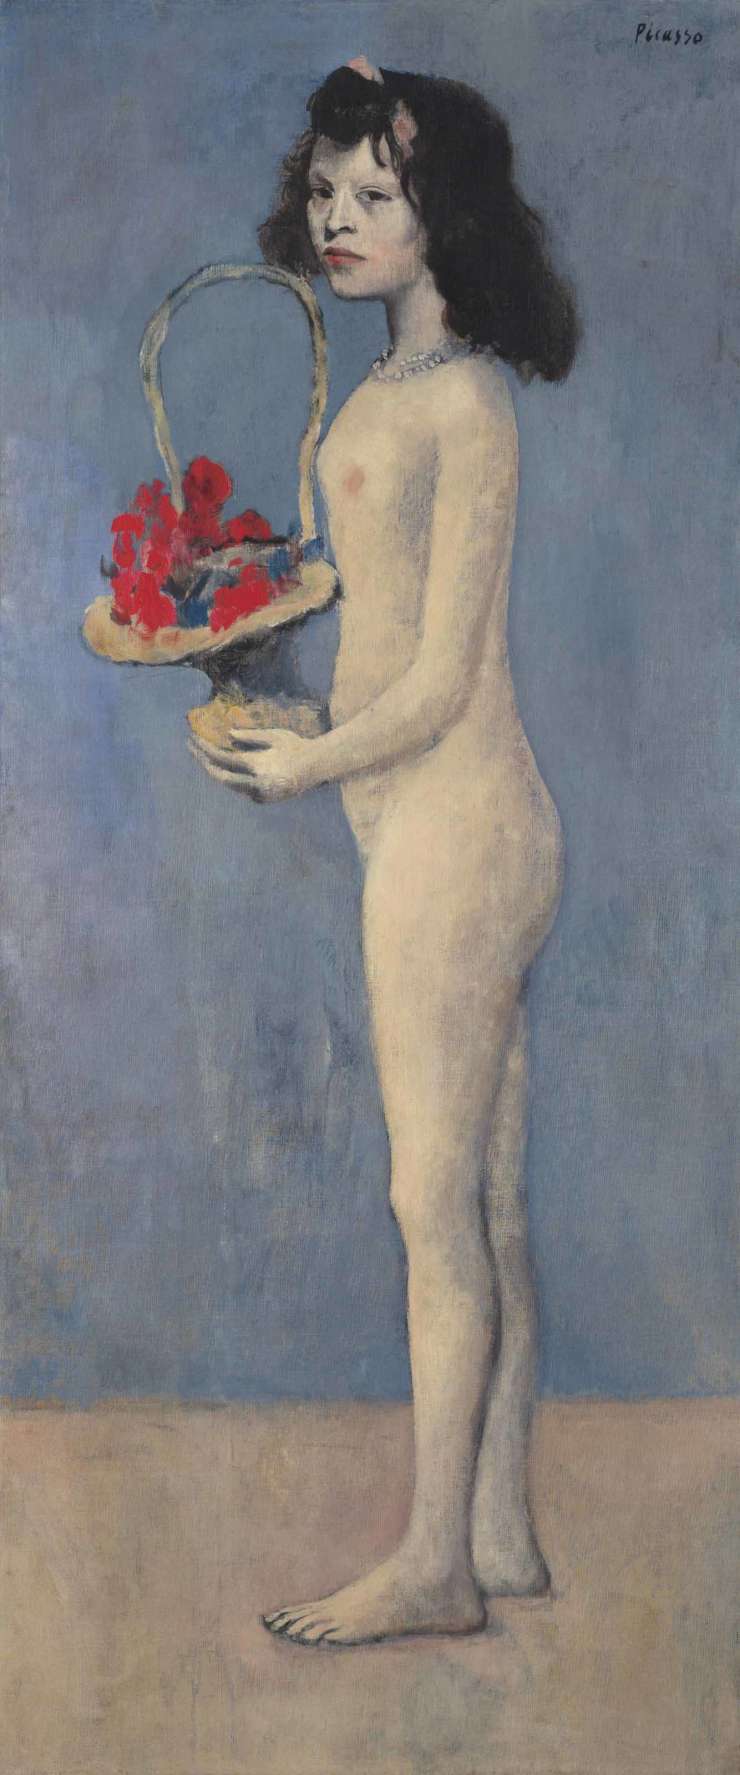 Picassova 115 milijonov dolarjev vredna mojstrovina na posodo pariškemu Muzeju D'Orsay